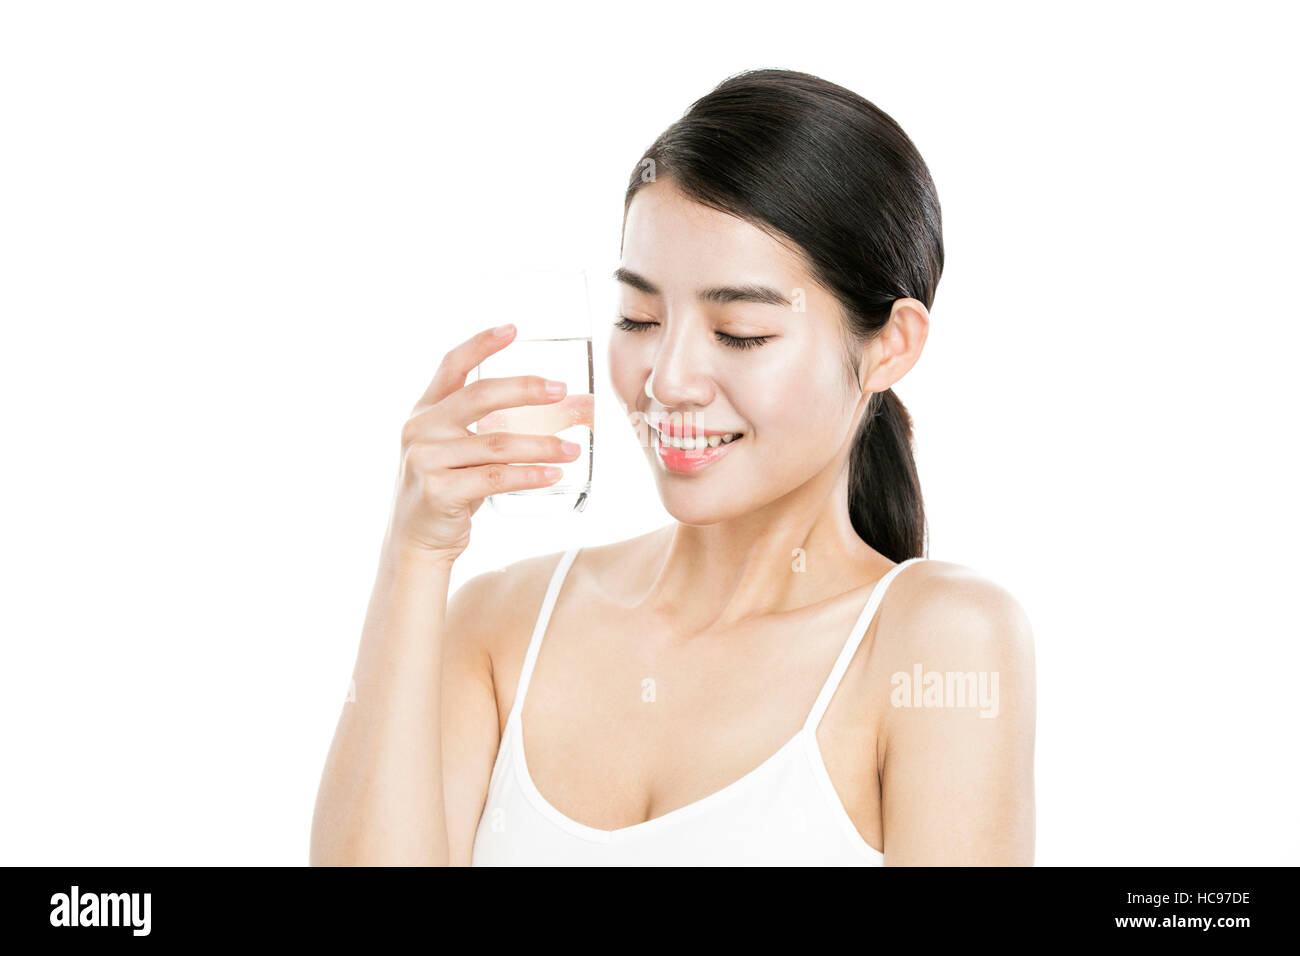 Porträt des jungen lächelnde Frau mit einem Glas Wasser, die Augen schließen Stockfoto